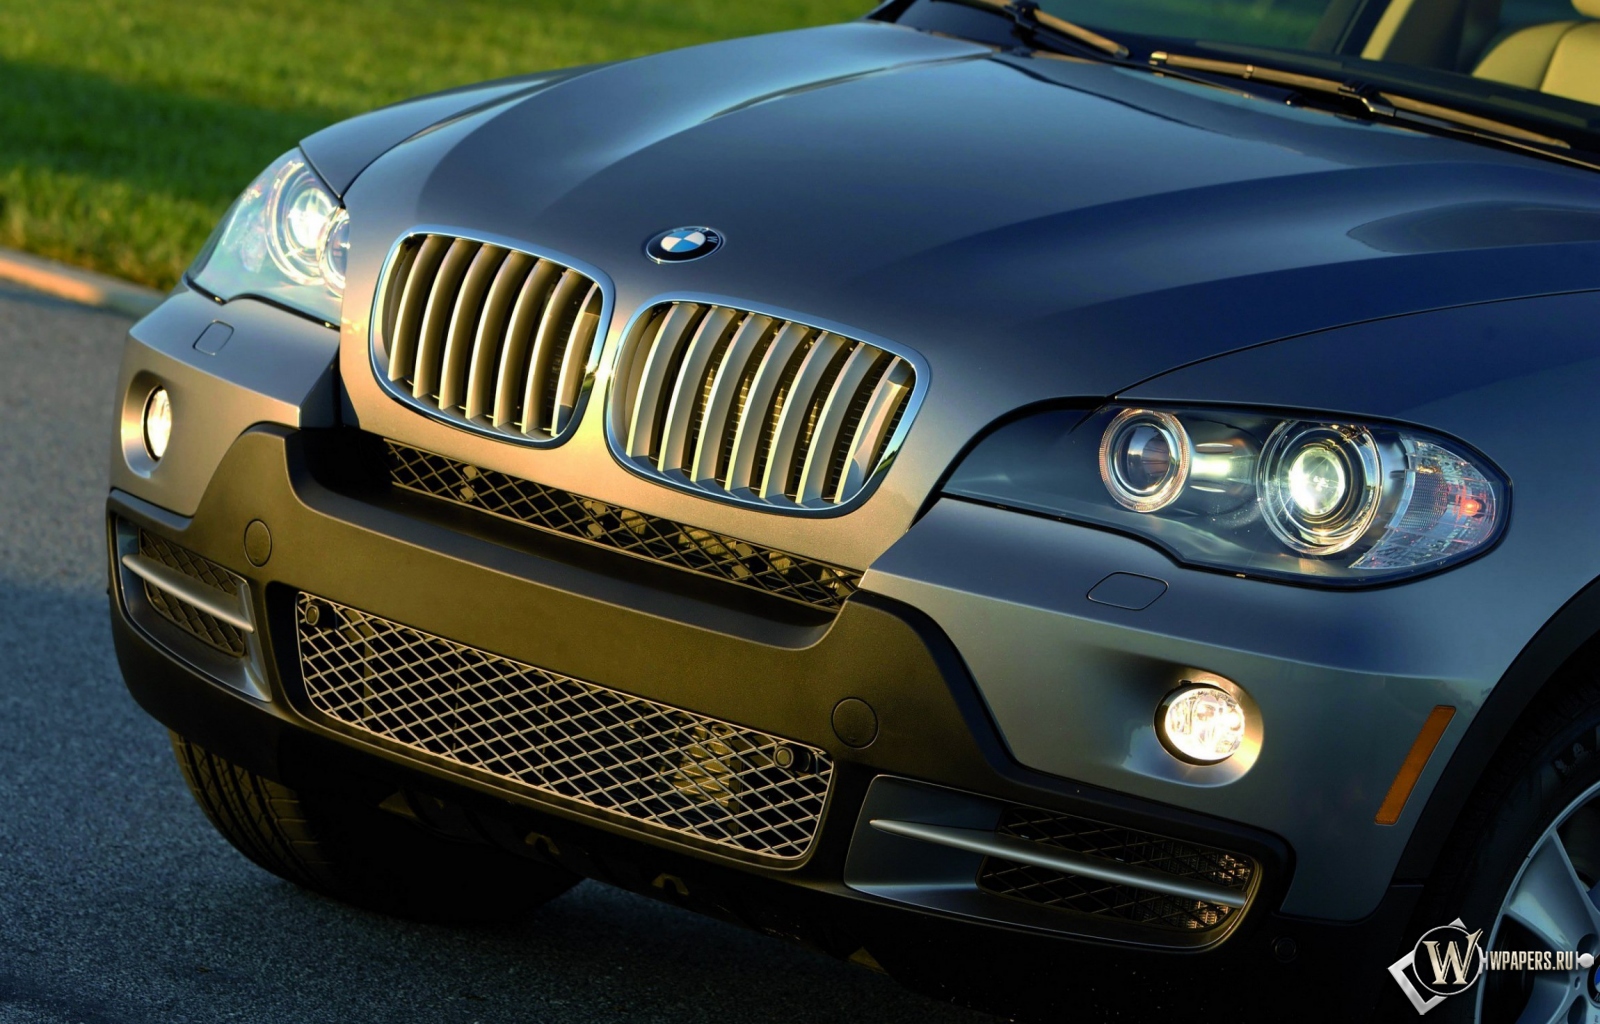 BMW X5 (2007) 1600x1024